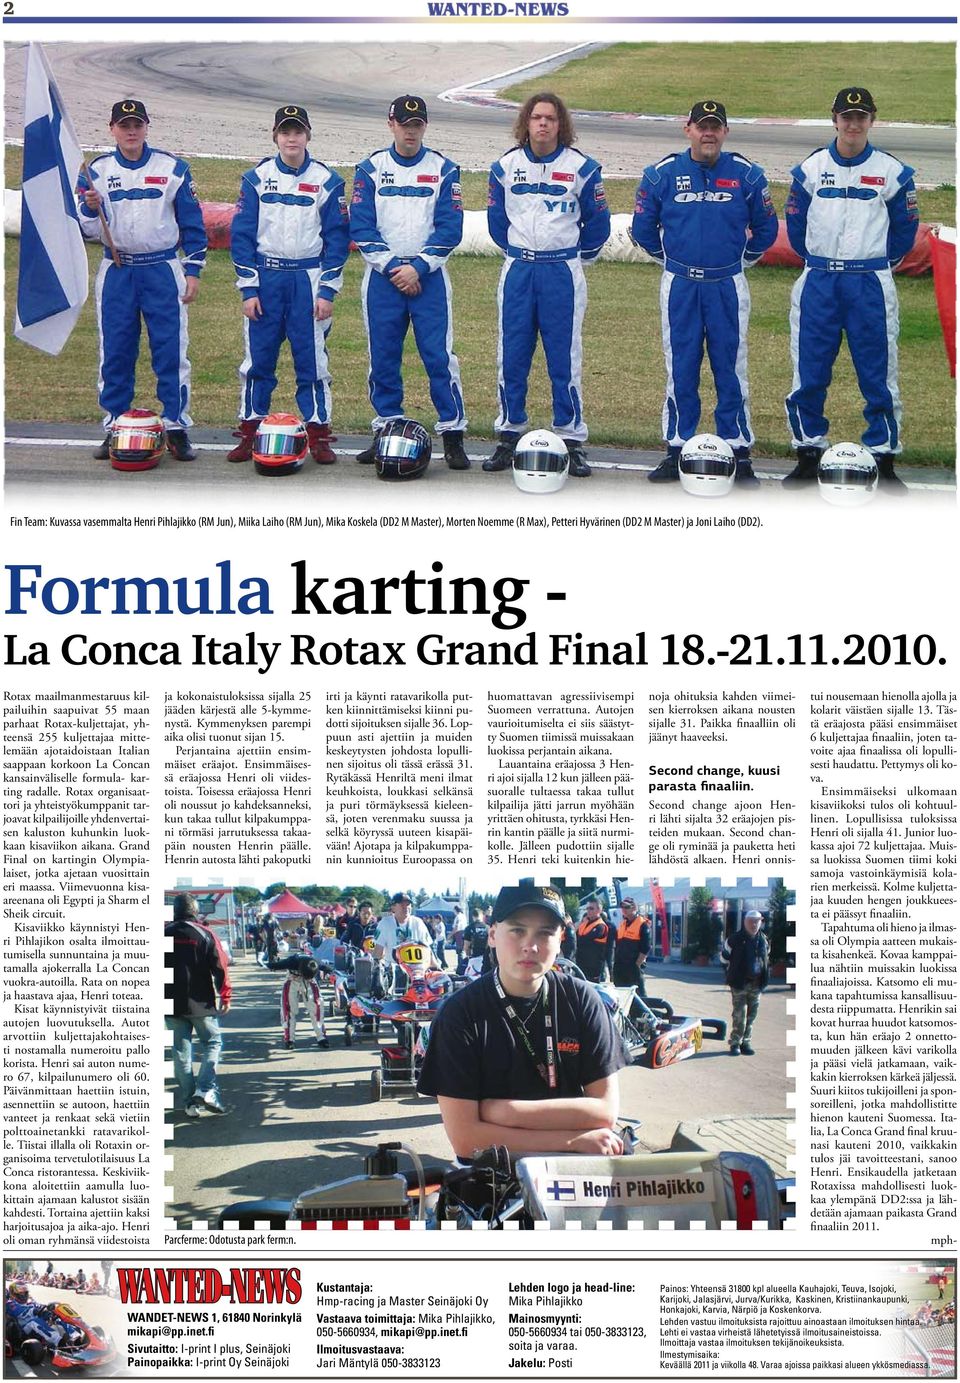 Rotax maailmanmestaruus kilpailuihin saapuivat 55 maan parhaat Rotax-kuljettajat, yhteensä 255 kuljettajaa mittelemään ajotaidoistaan Italian saappaan korkoon La Concan kansainväliselle formula-